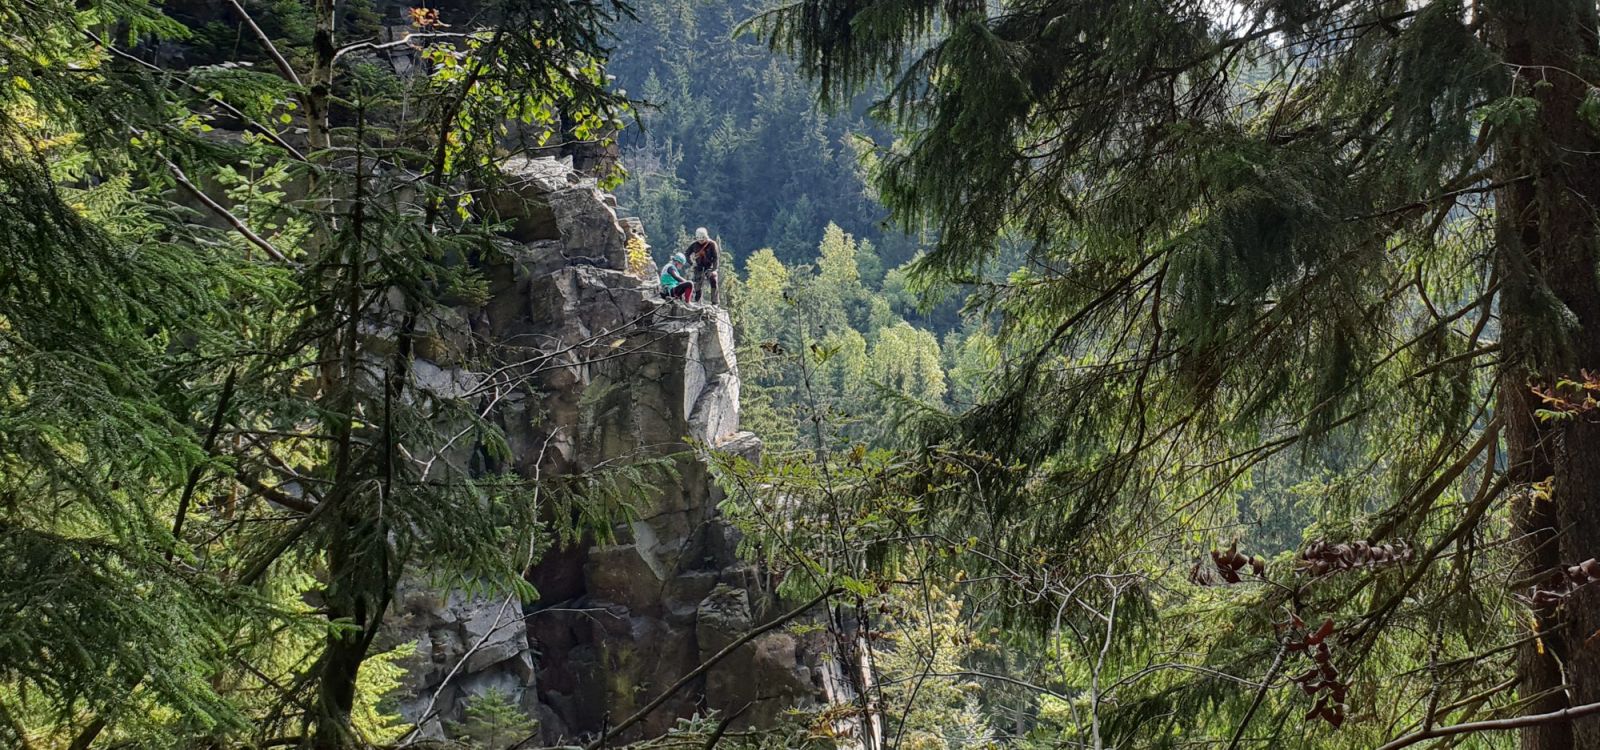 Klettern am Nonnenfelsen im Erzgebirge